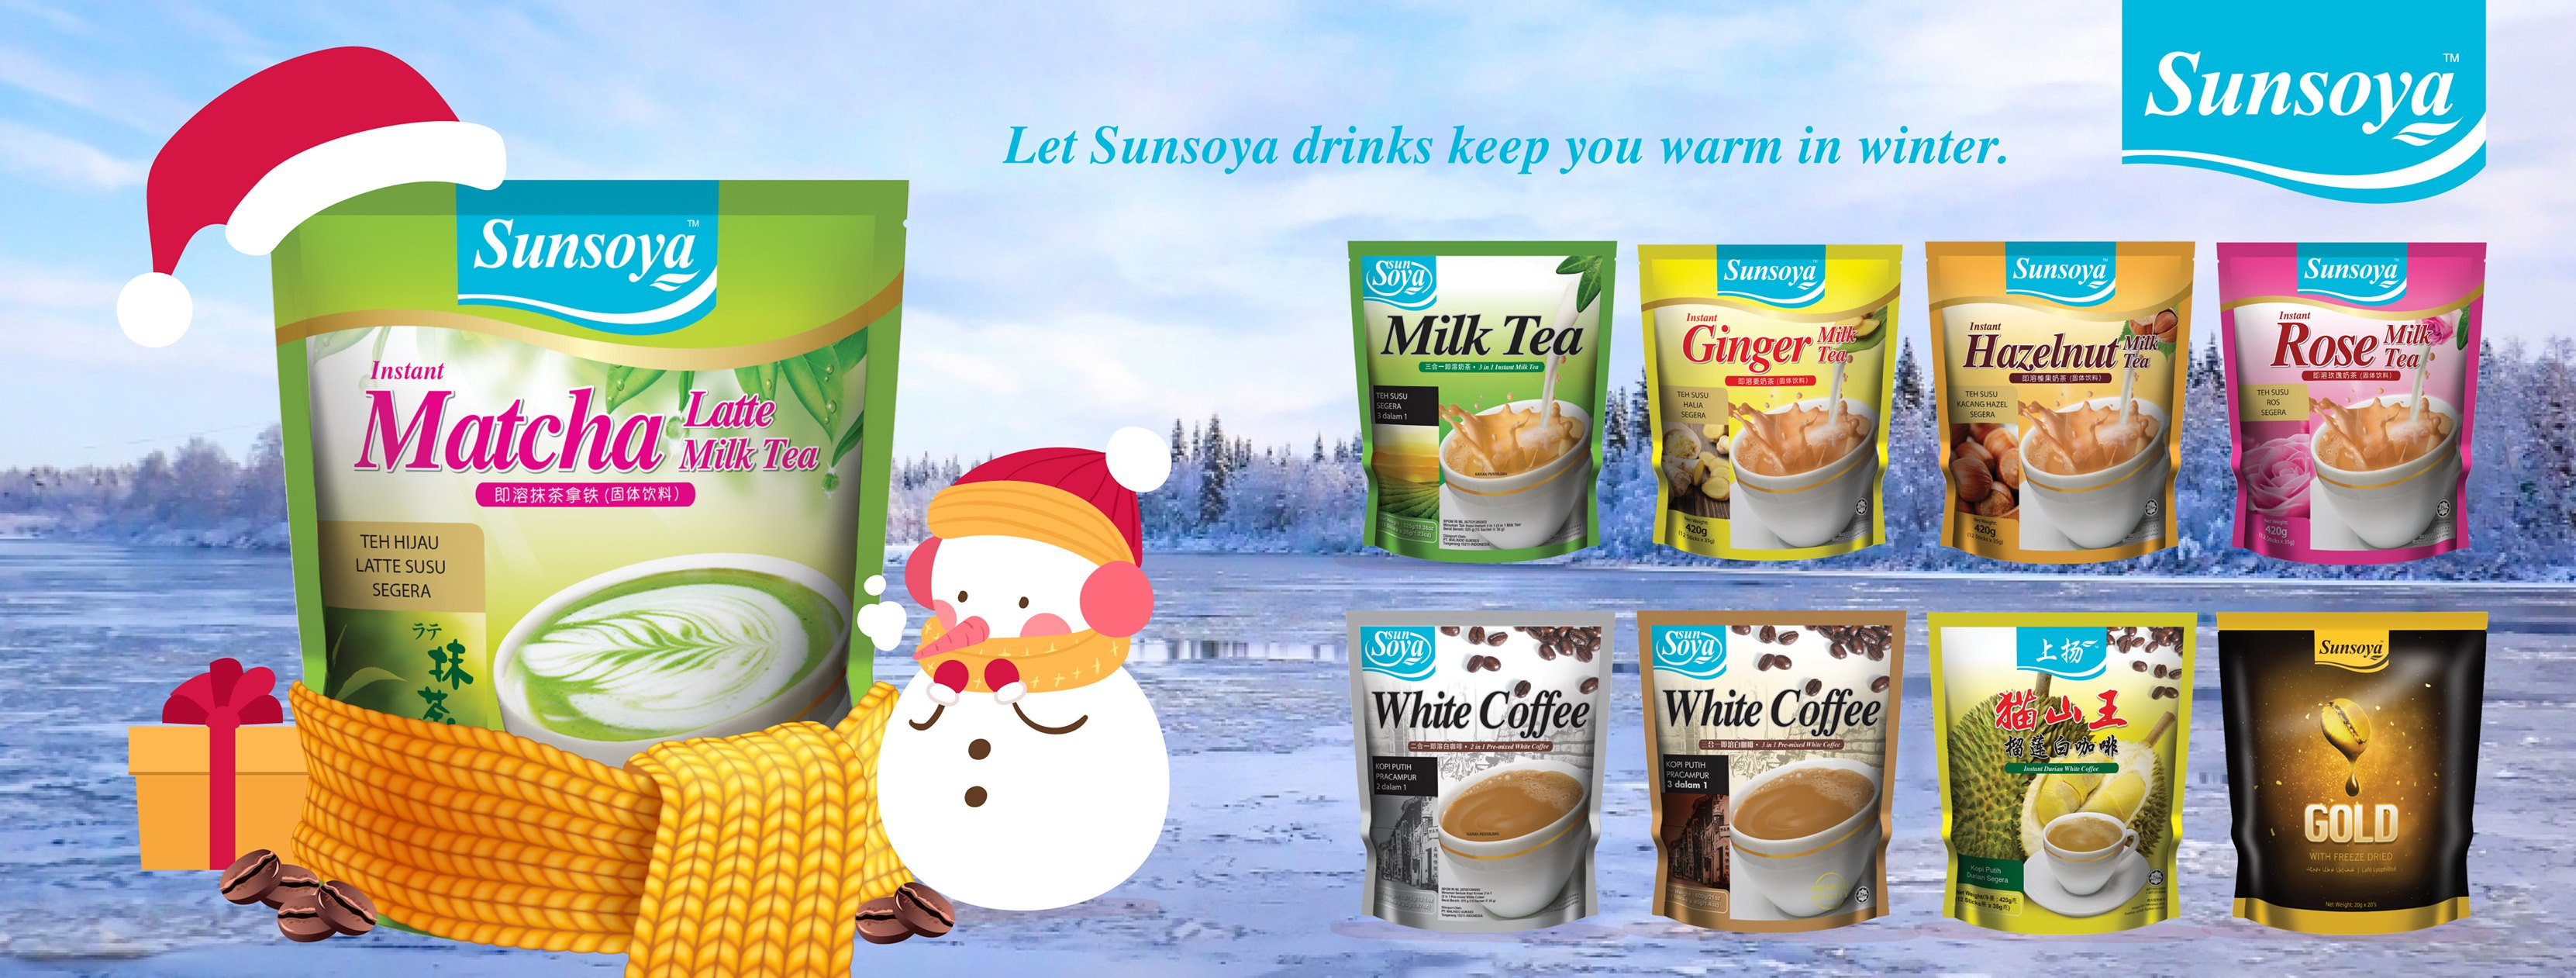 Trà sữa gói Malaysia SunSoya / Trà sữa hòa tan 3 trong 1/ Trà sữa nhập khẩu/ Trà sữa tự pha- Vị trà xanh/ Matcha milk tea